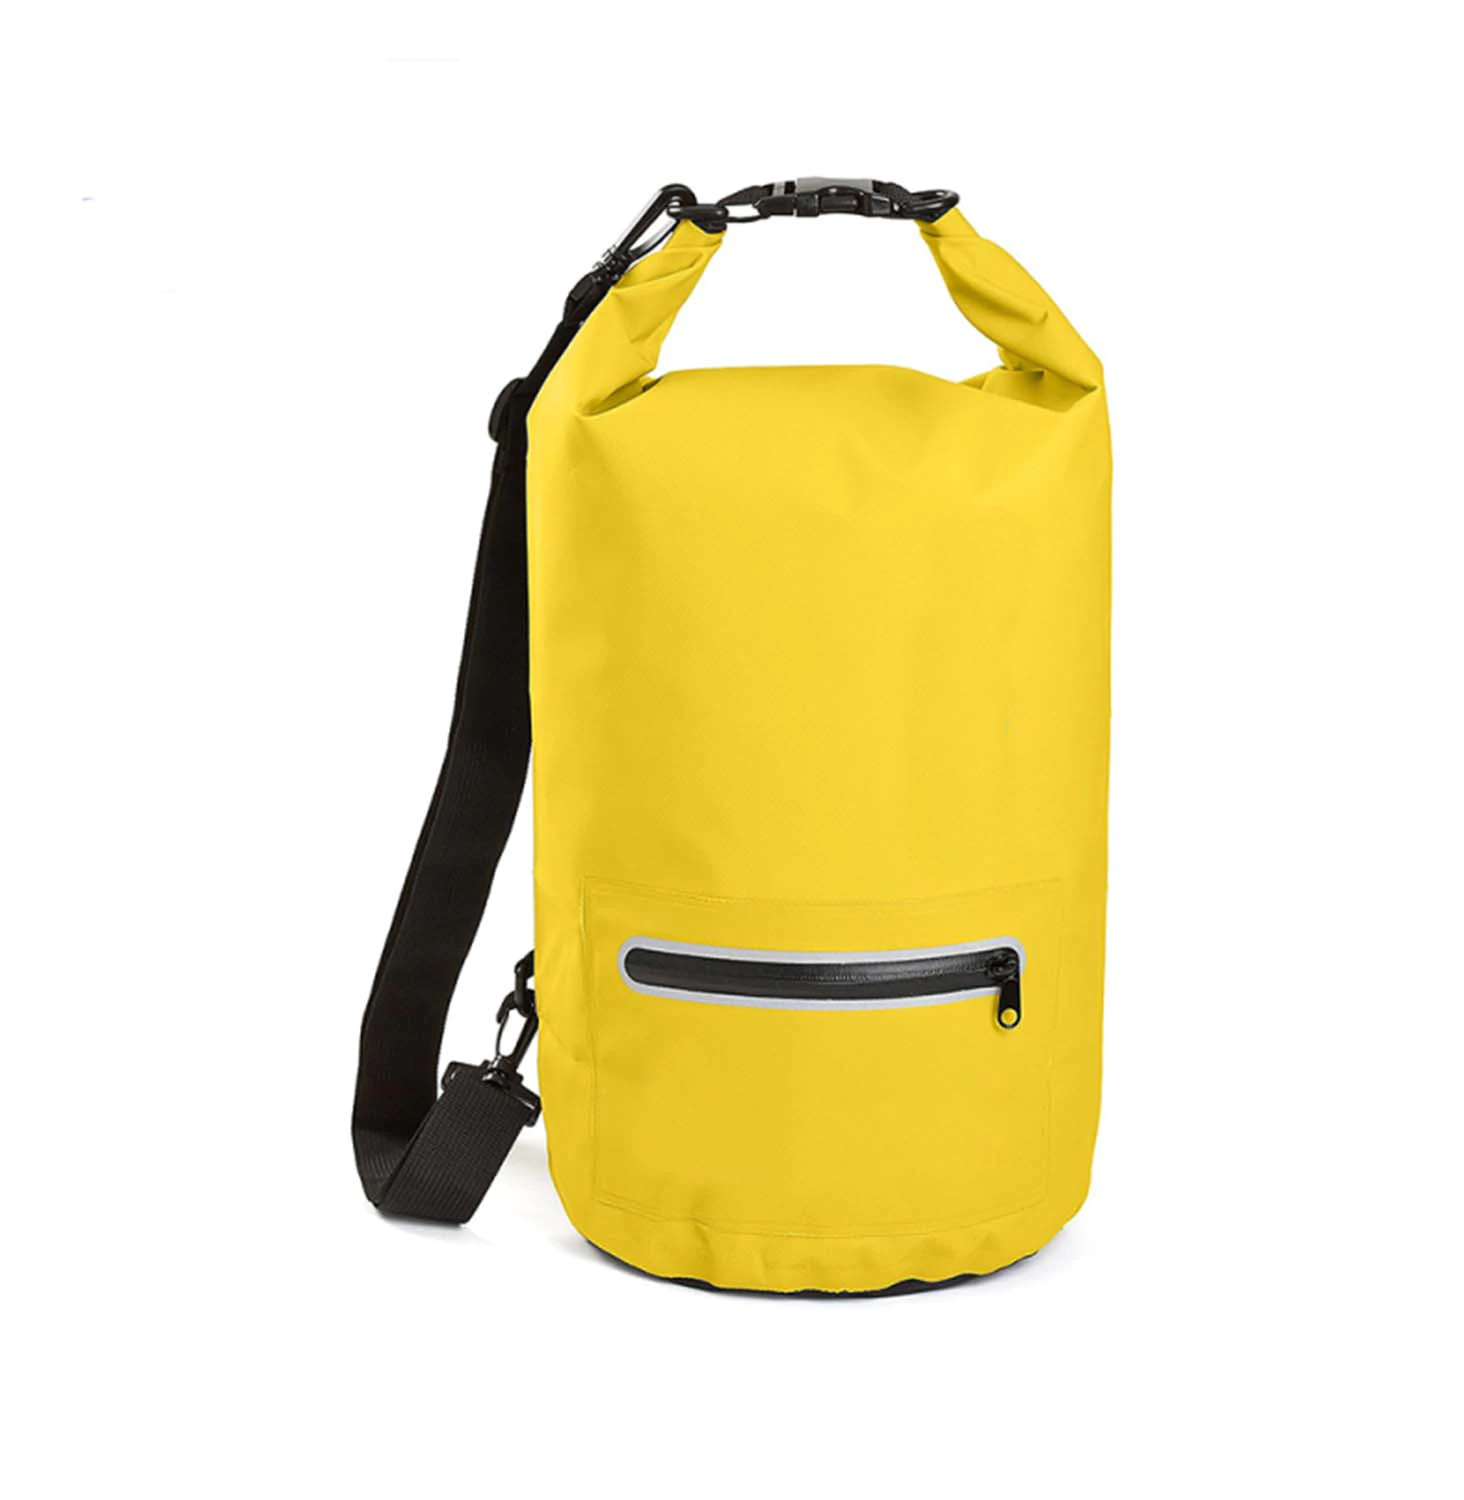 Prosperity floating dry bag sizes with adjustable shoulder strap for kayaking